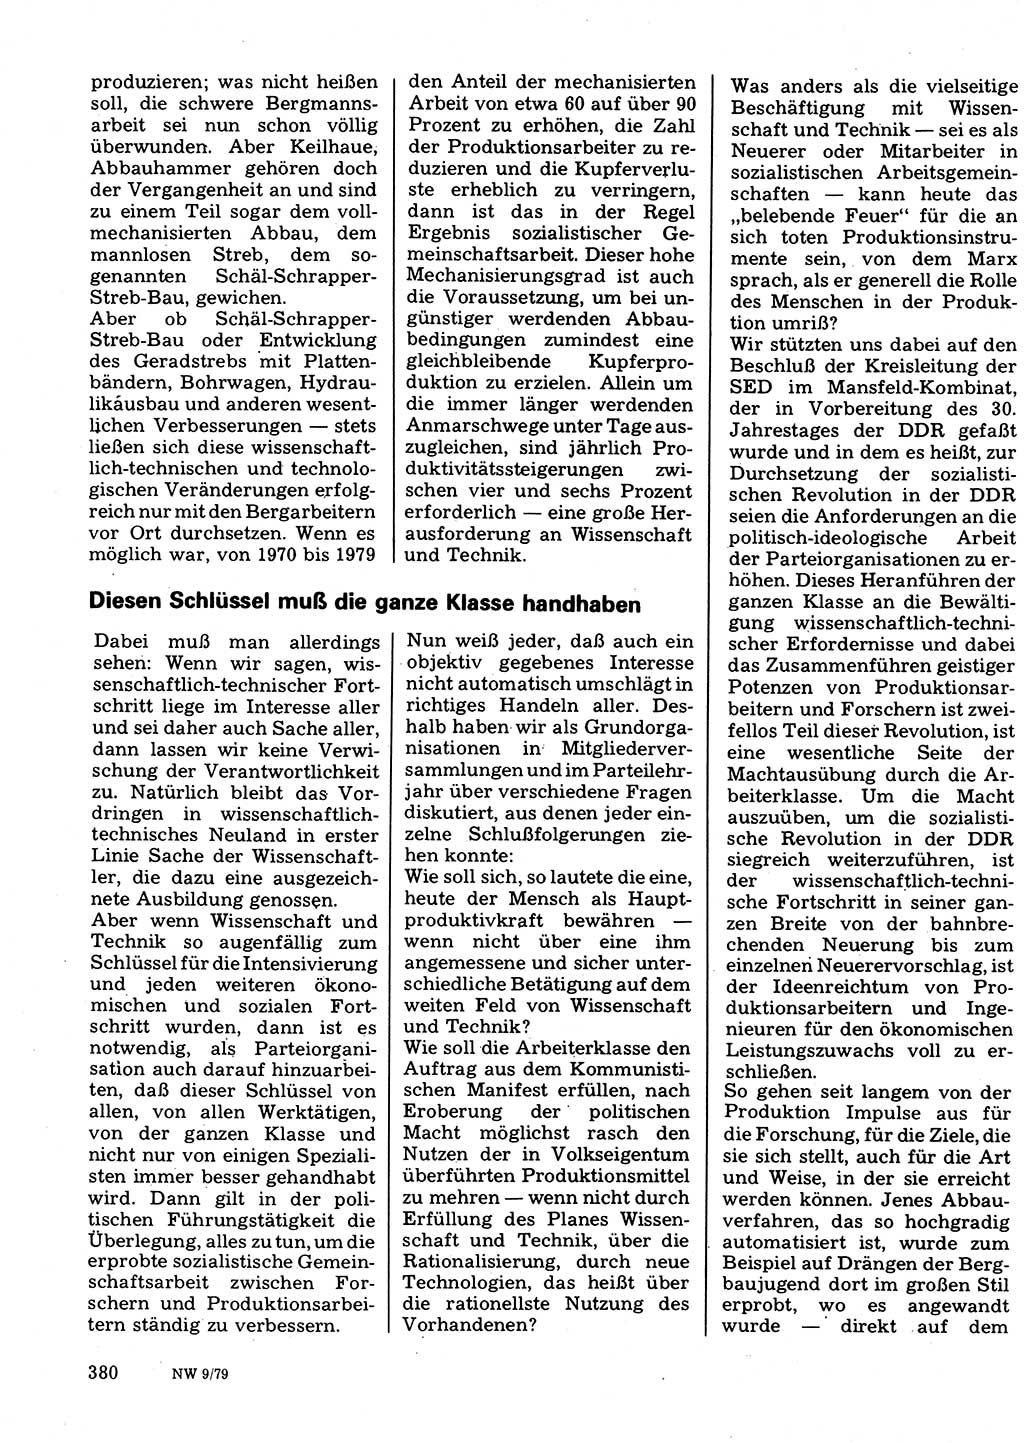 Neuer Weg (NW), Organ des Zentralkomitees (ZK) der SED (Sozialistische Einheitspartei Deutschlands) für Fragen des Parteilebens, 34. Jahrgang [Deutsche Demokratische Republik (DDR)] 1979, Seite 380 (NW ZK SED DDR 1979, S. 380)